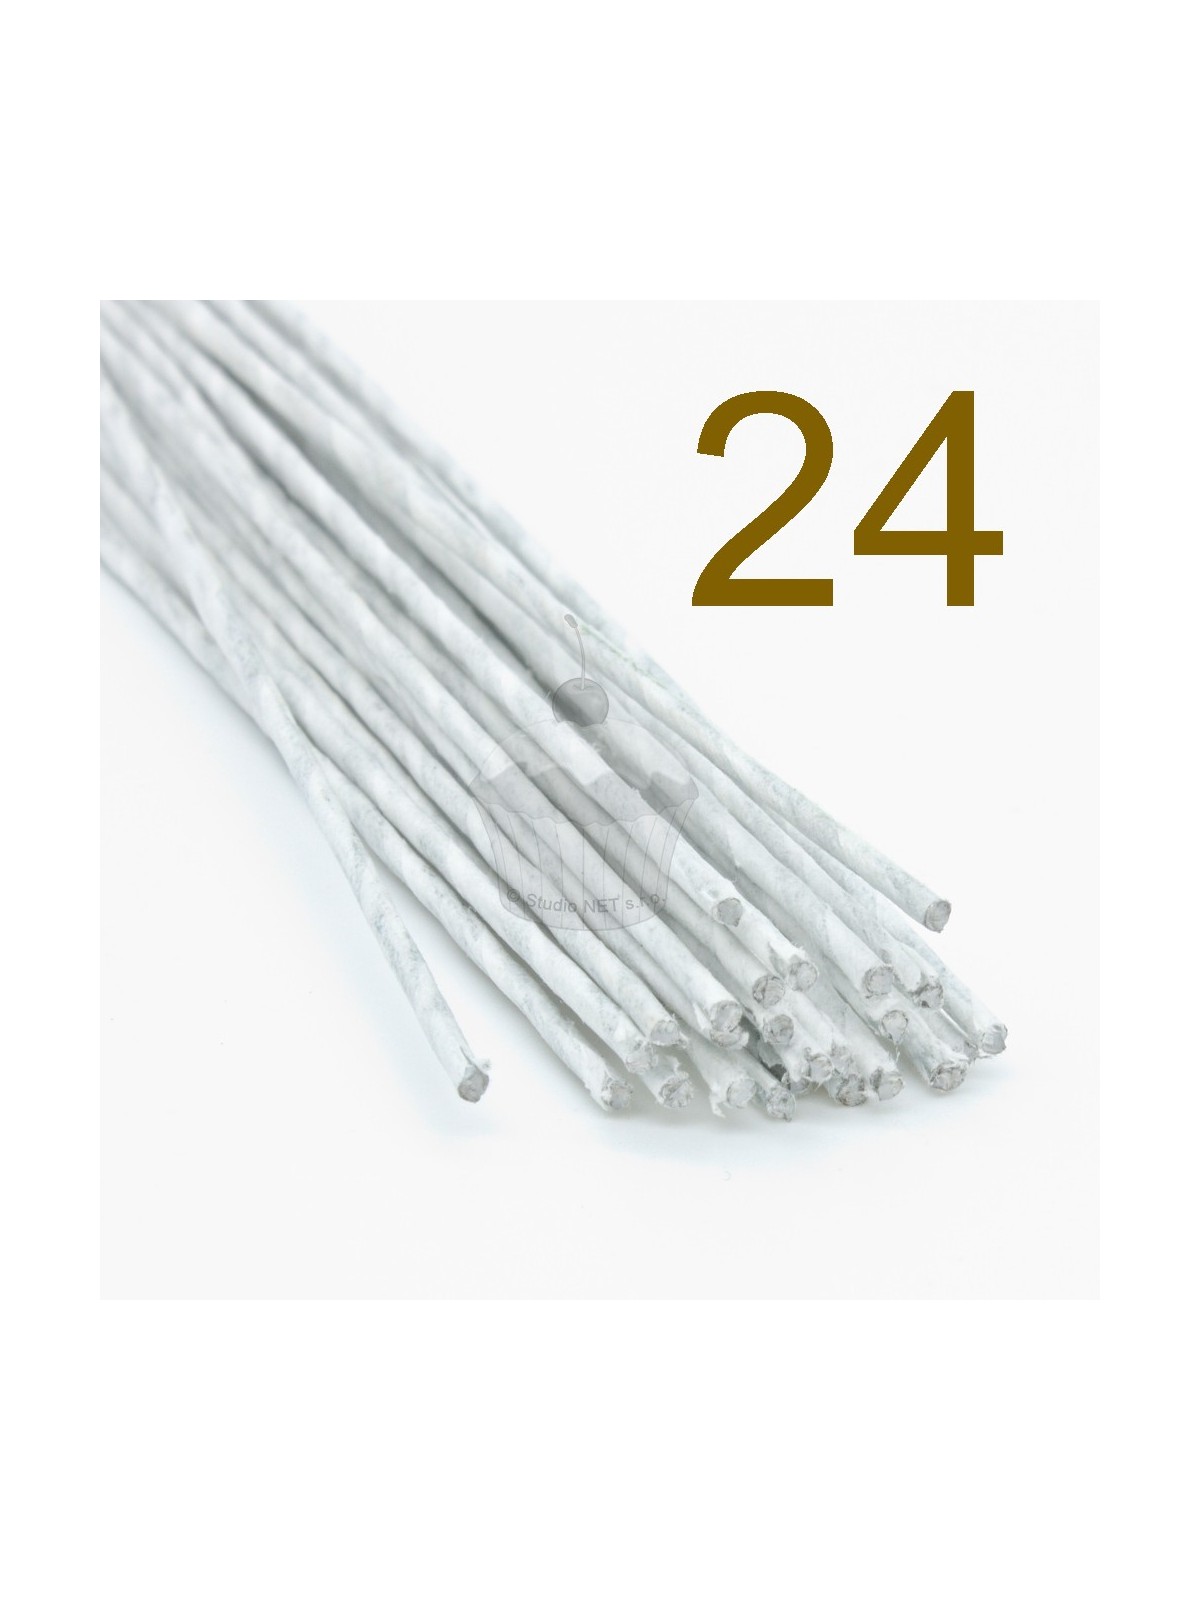 Caketools - 24  aranžovací drátky bílé - 50ks